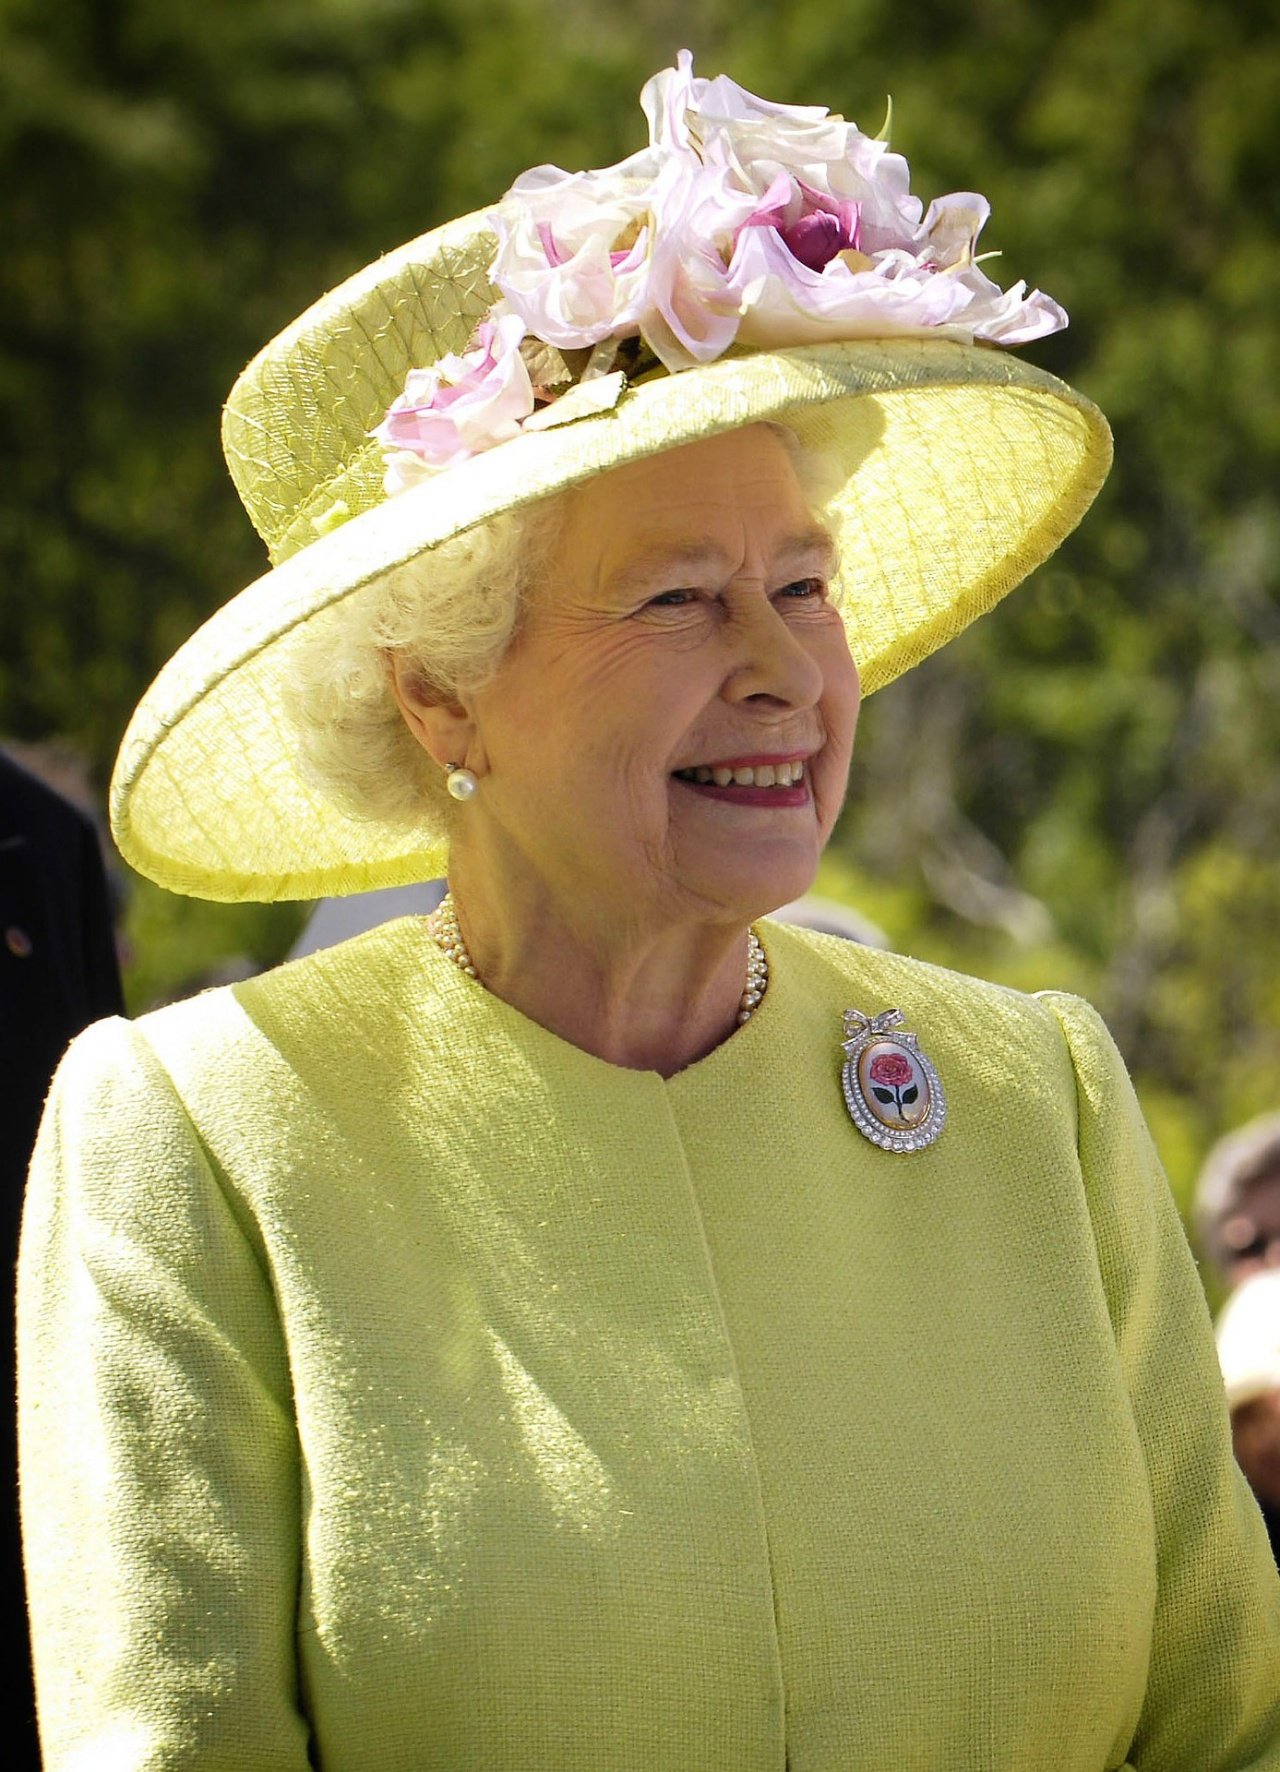 La reina Isabel II murió por ‘edad avanzada’, según su certificado de defunción